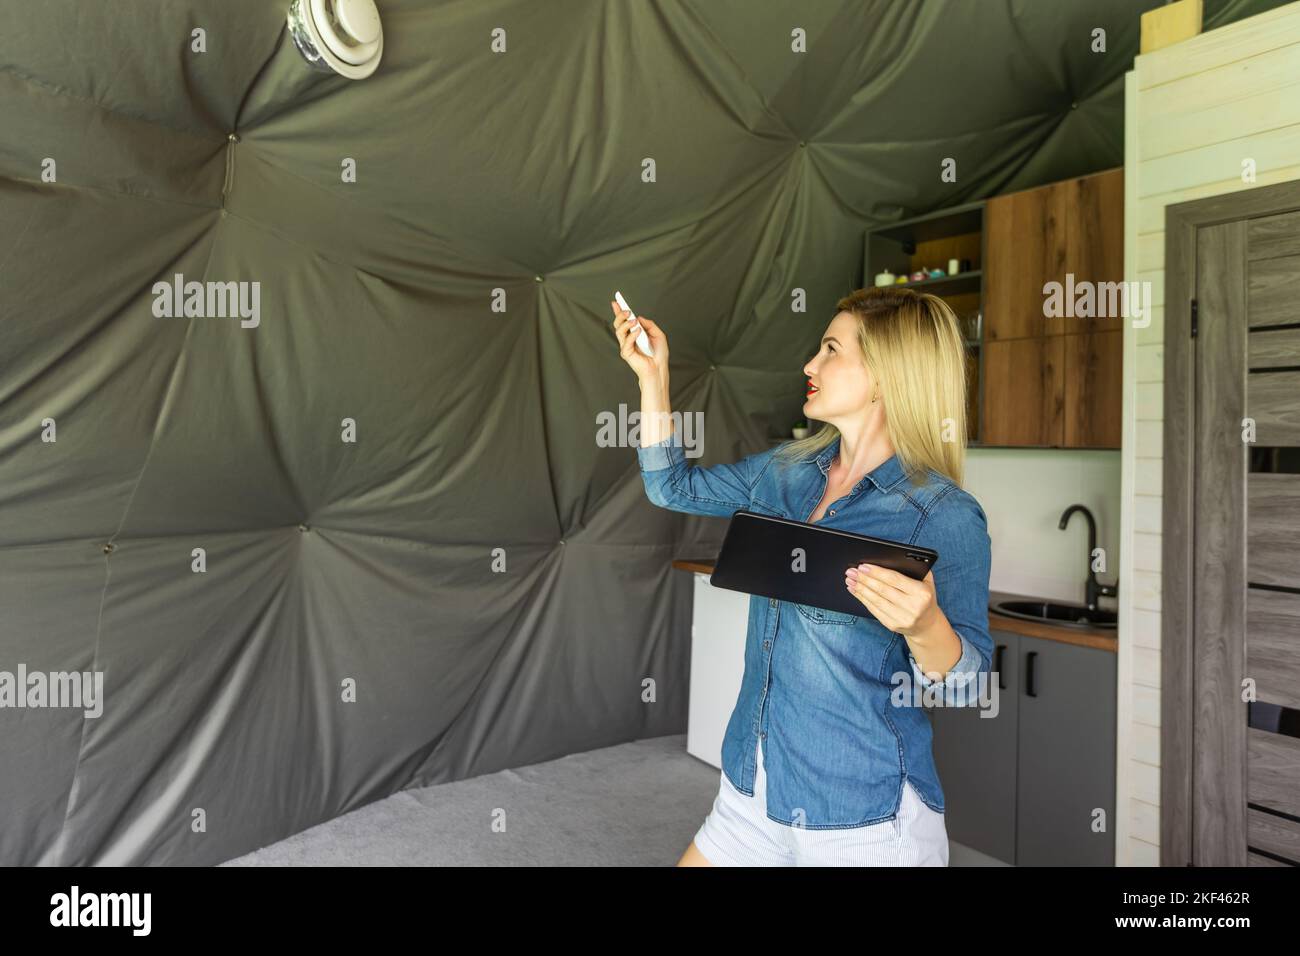 femme avec une tablette qui active le système de ventilation comme récupérateur pour la qualité de l'air frais à l'intérieur, maison intelligente Banque D'Images